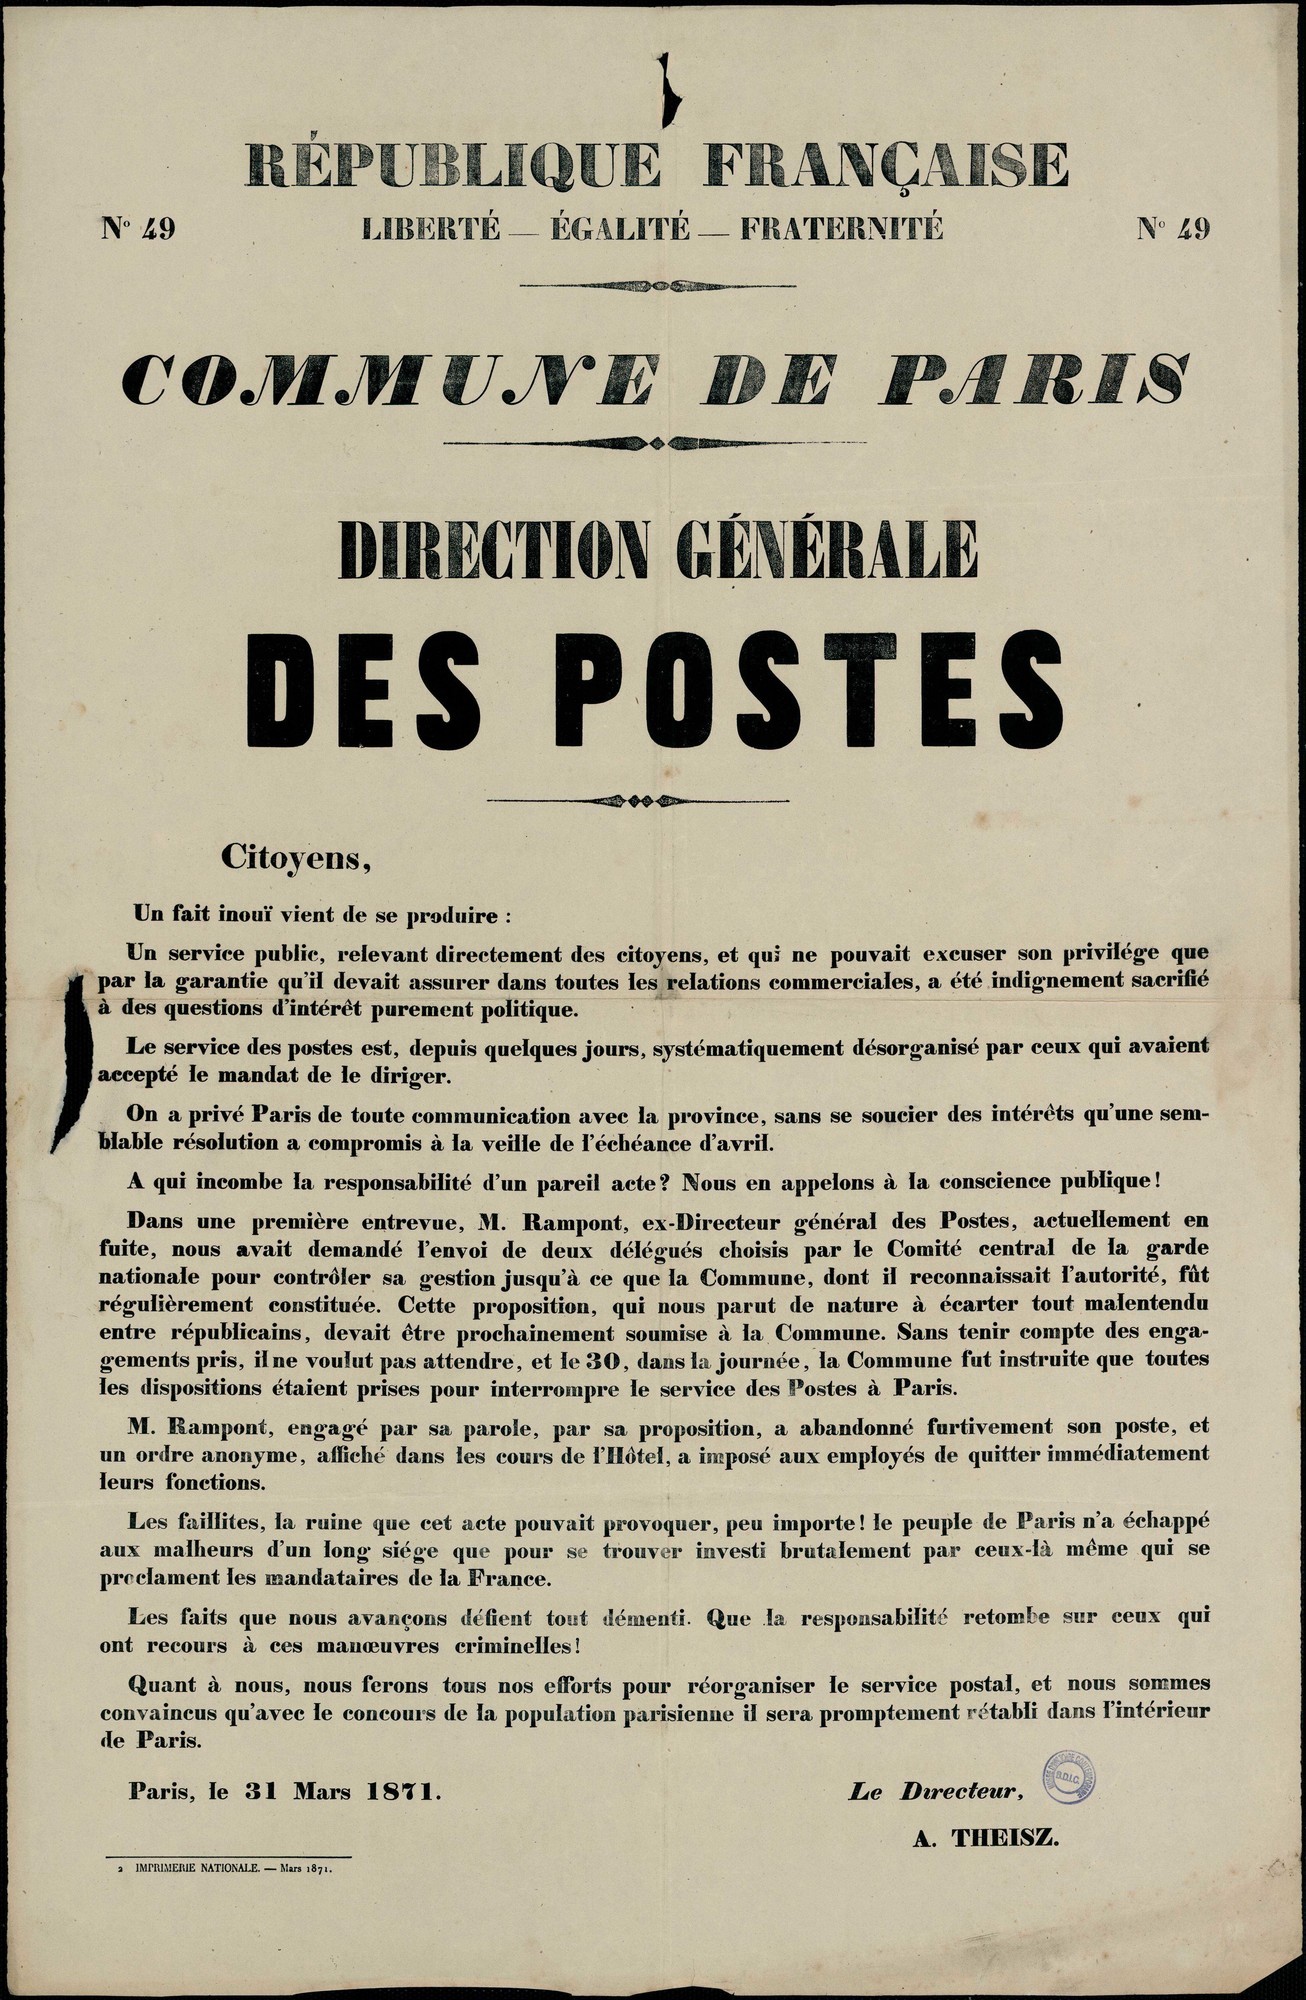 Affiche de la Commune de Paris N° 49 du 31 mars 1871 - Annonce de Theisz du départ préccipité de Rampont